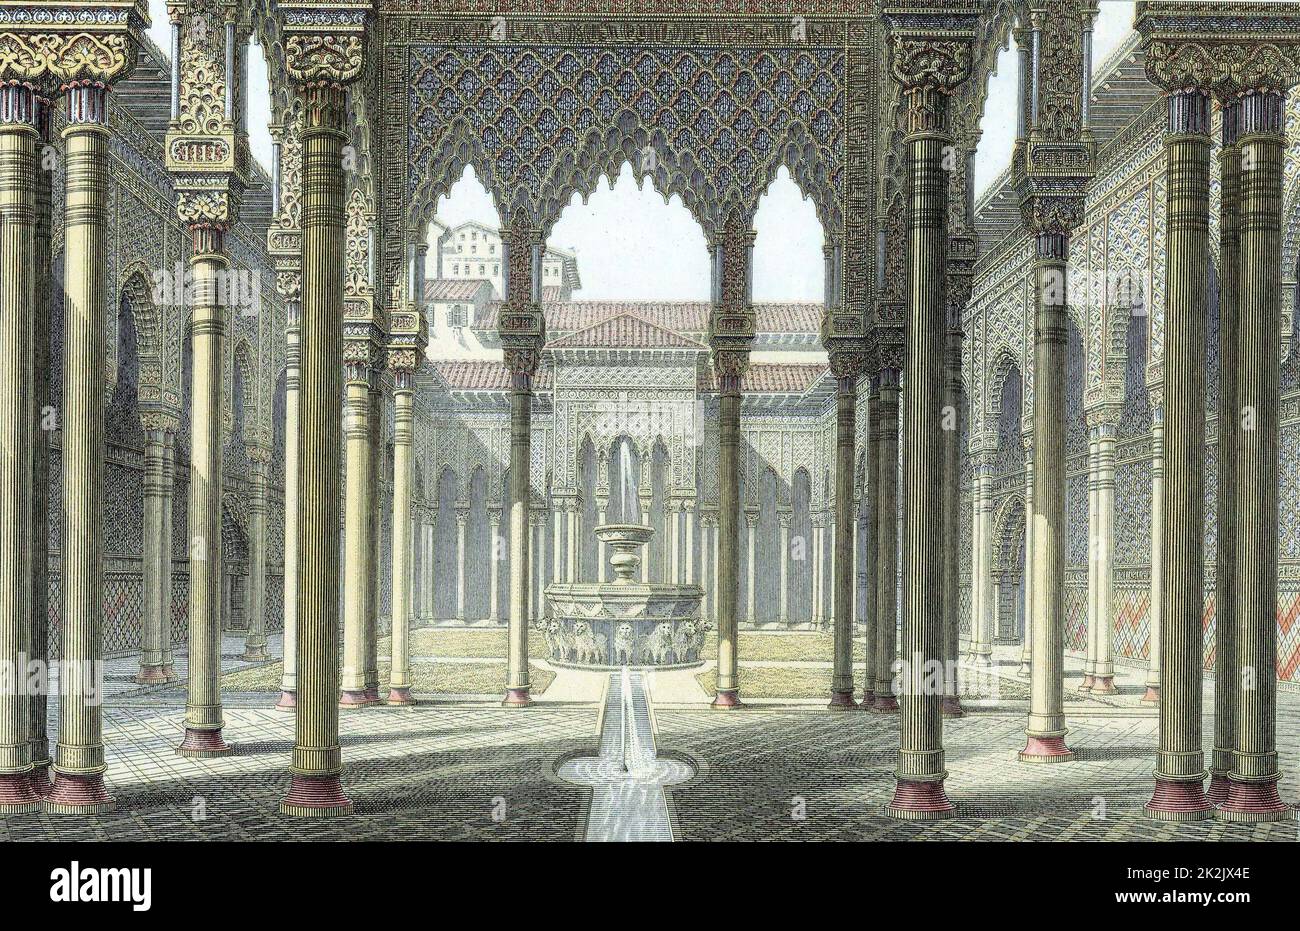 Palais de l'Alhambra des rois mauresques de Grenade partiellement reconstruit par l'empereur Charles V C1530. Cour des Lions. Gravure imprimée couleur fin 19th siècle Banque D'Images